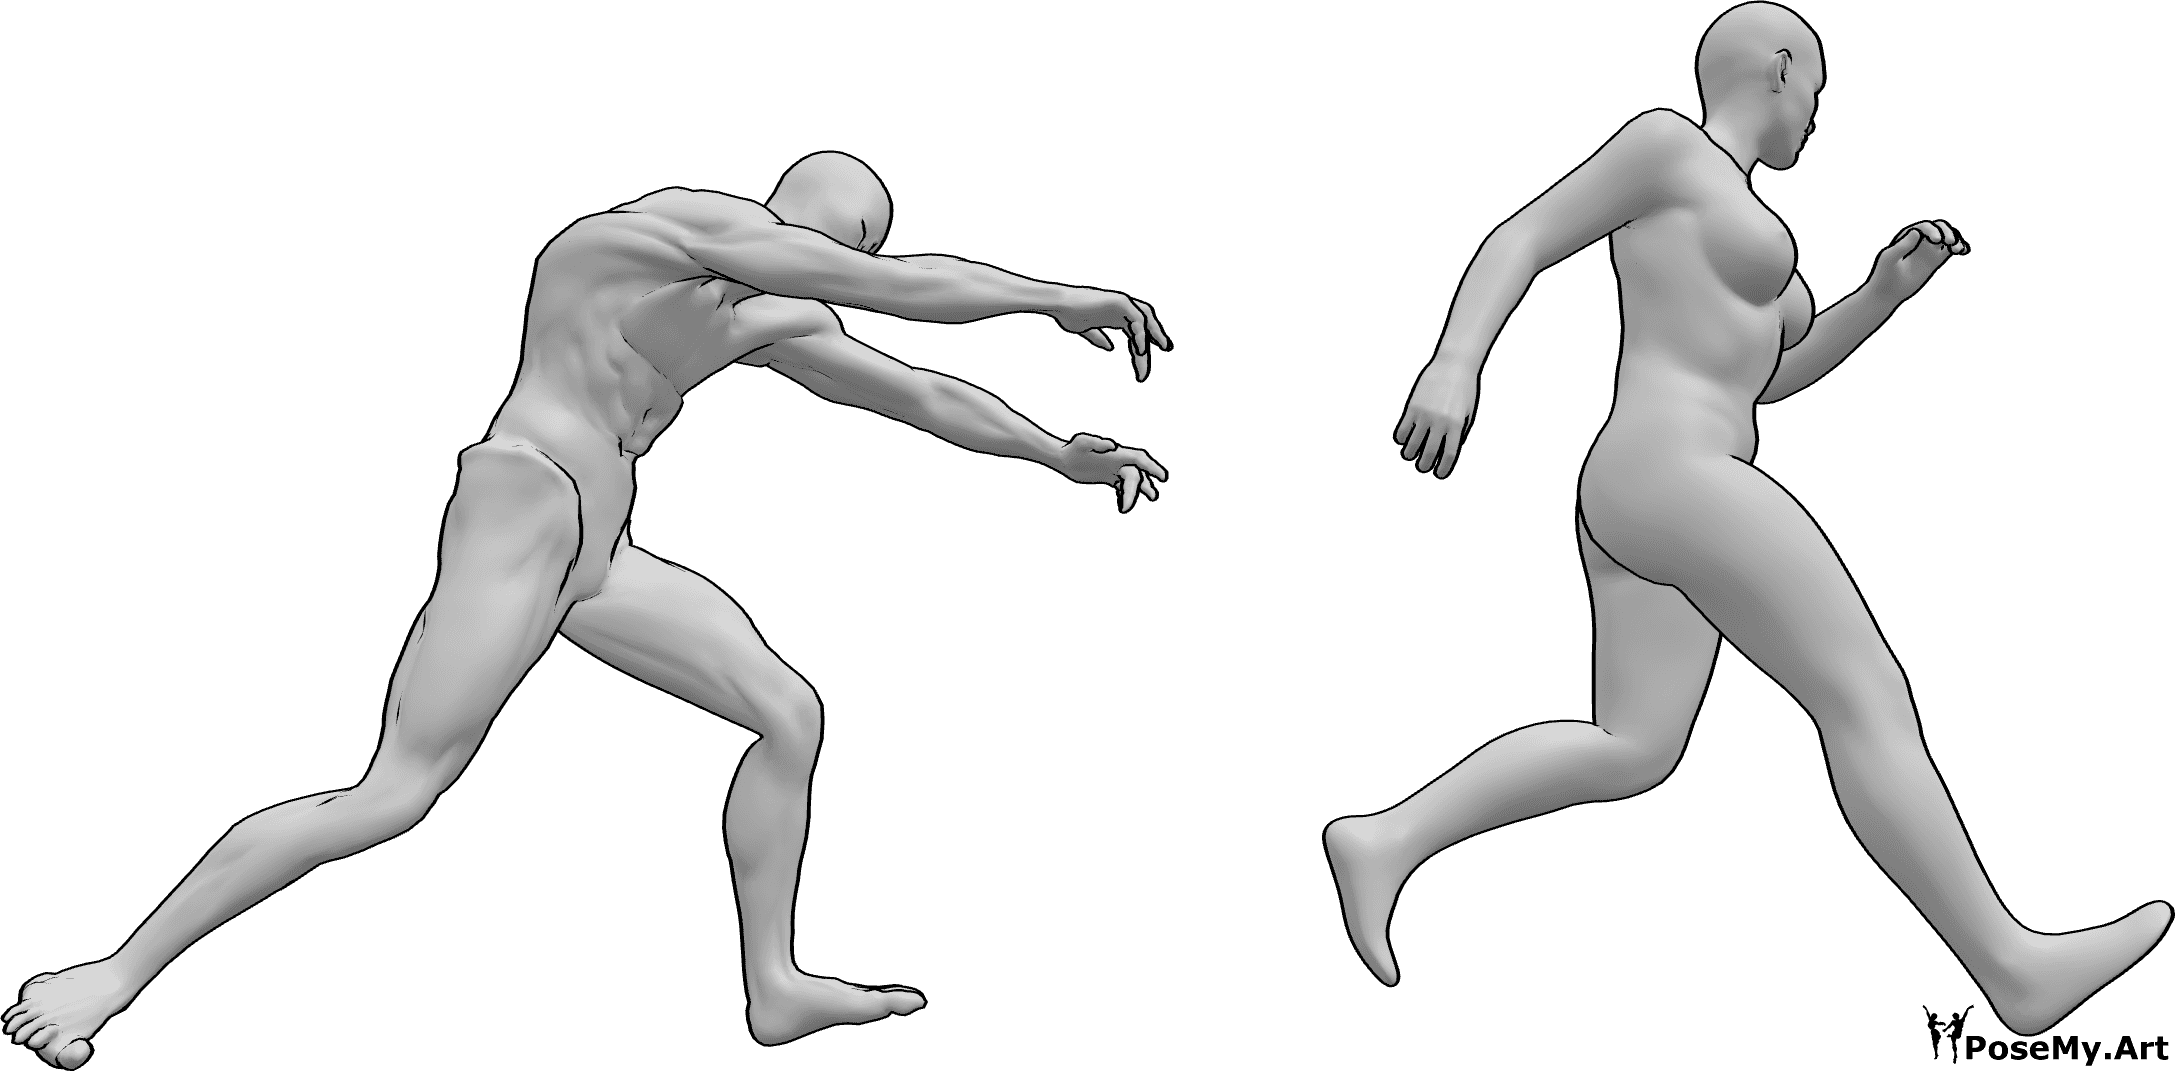 Riferimento alle pose- Zombie che inseguono la donna in posa - Lo zombie insegue una femmina che cerca di scappare da lui